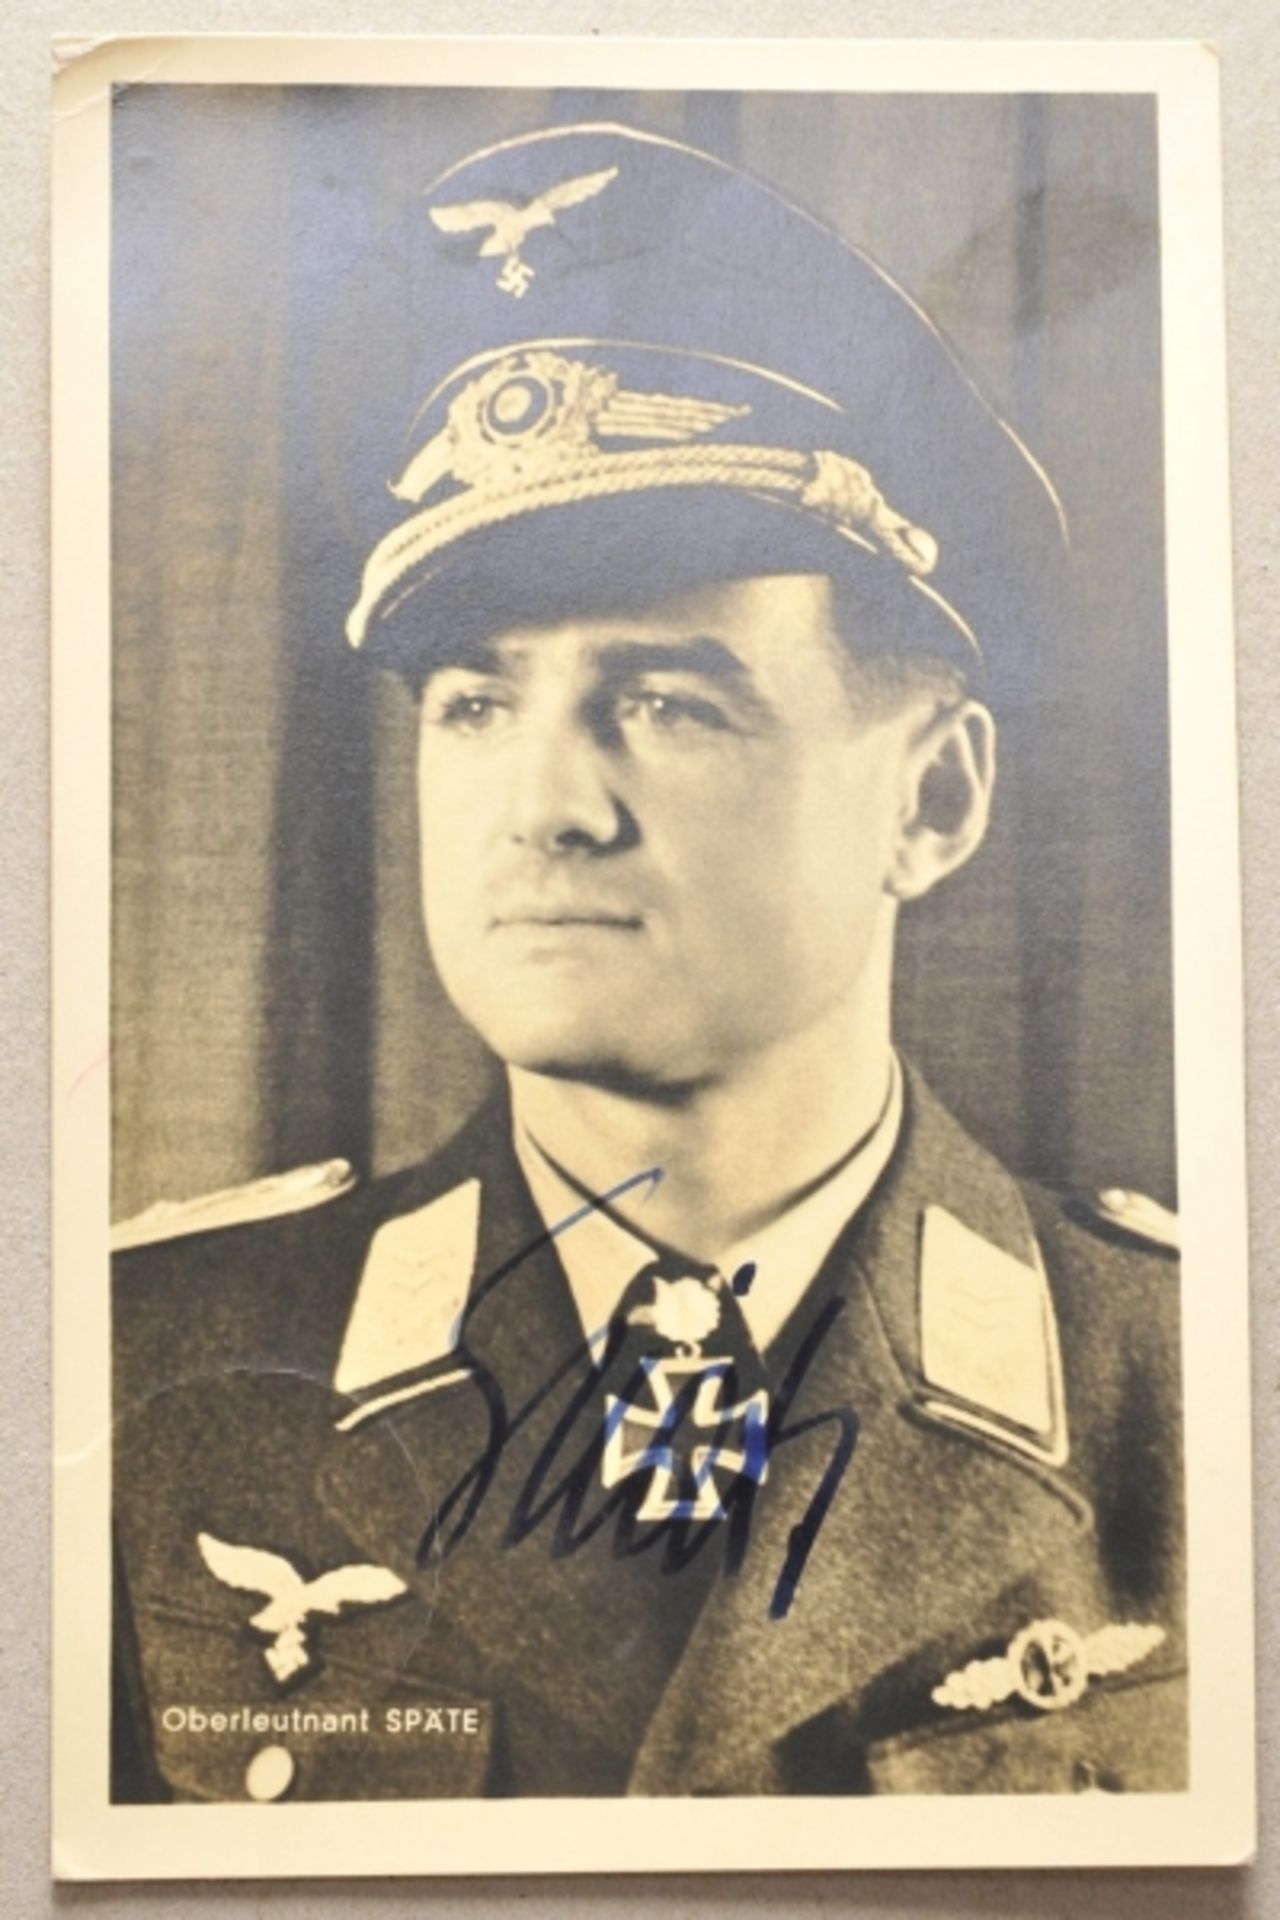 Späte, Wolfgang.(1911-1997). Jagdflieger, Testpilot der Me163 (Komet), 79 Luftsiege, Tröger des